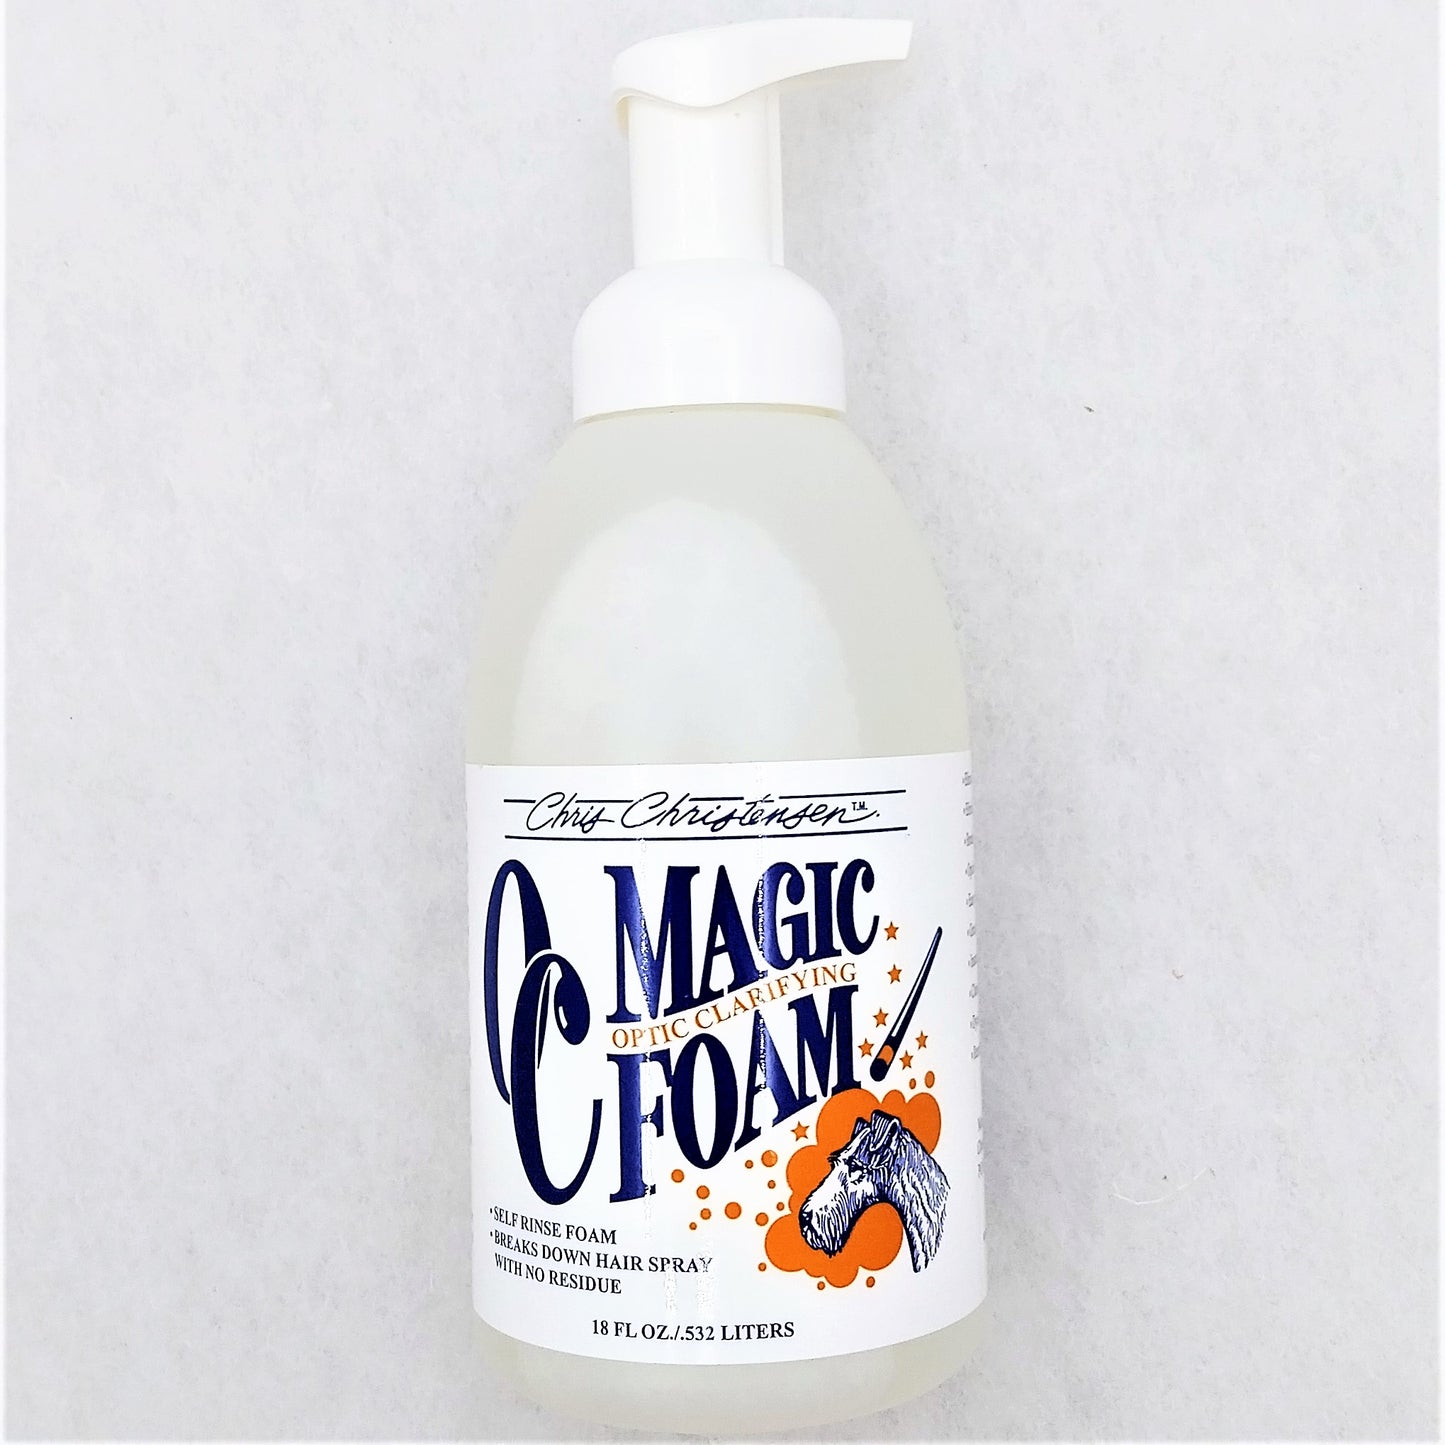 Chris Christensen OC Magic Foam Trocken-Shampoo-Schaum, optischer Aufheller, Cleaner, 532ml